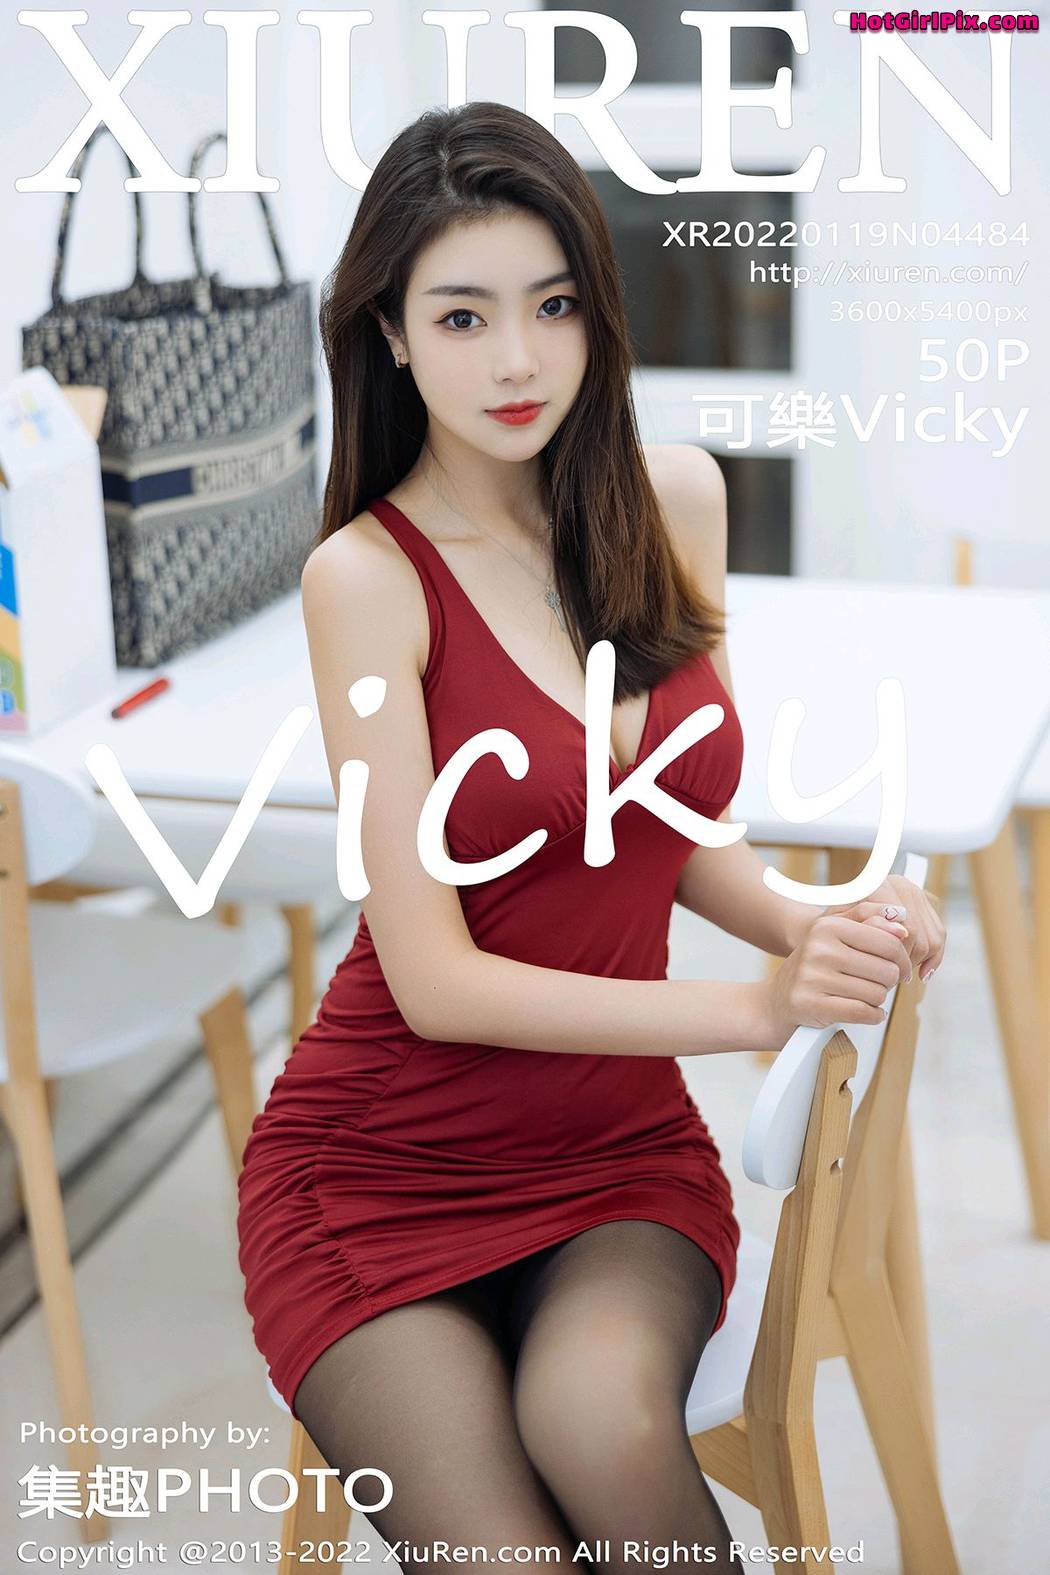 [XIUREN] No.4484 Ke Le Vicky 可樂Vicky Cover Photo